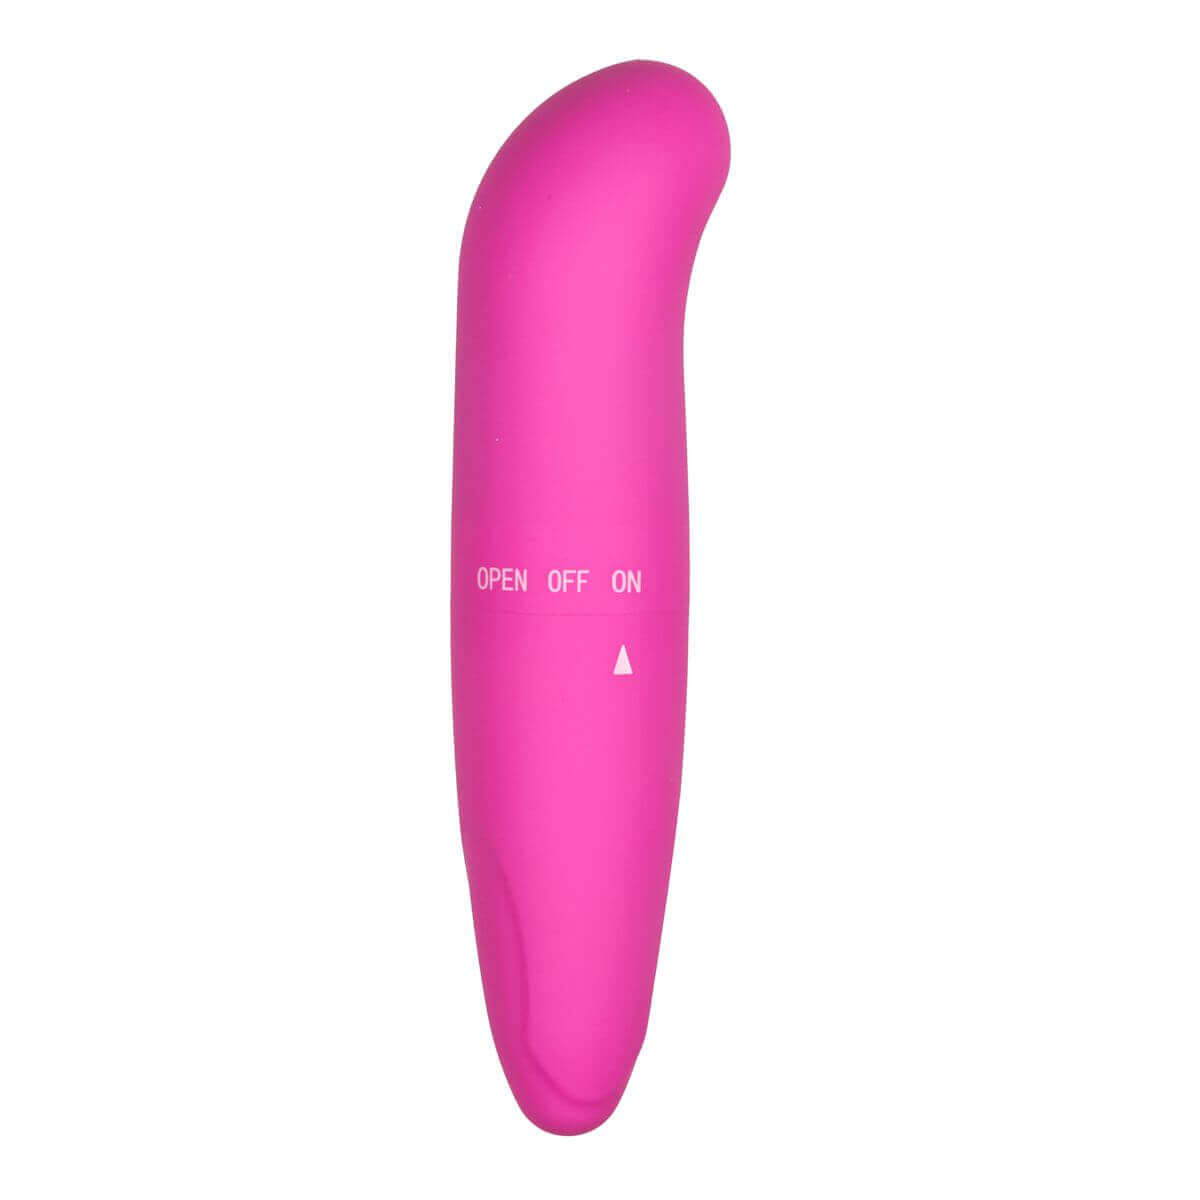 EasyToys Mini G-Vibe - G-pont vibrátor (pink) G-pont izgató kép